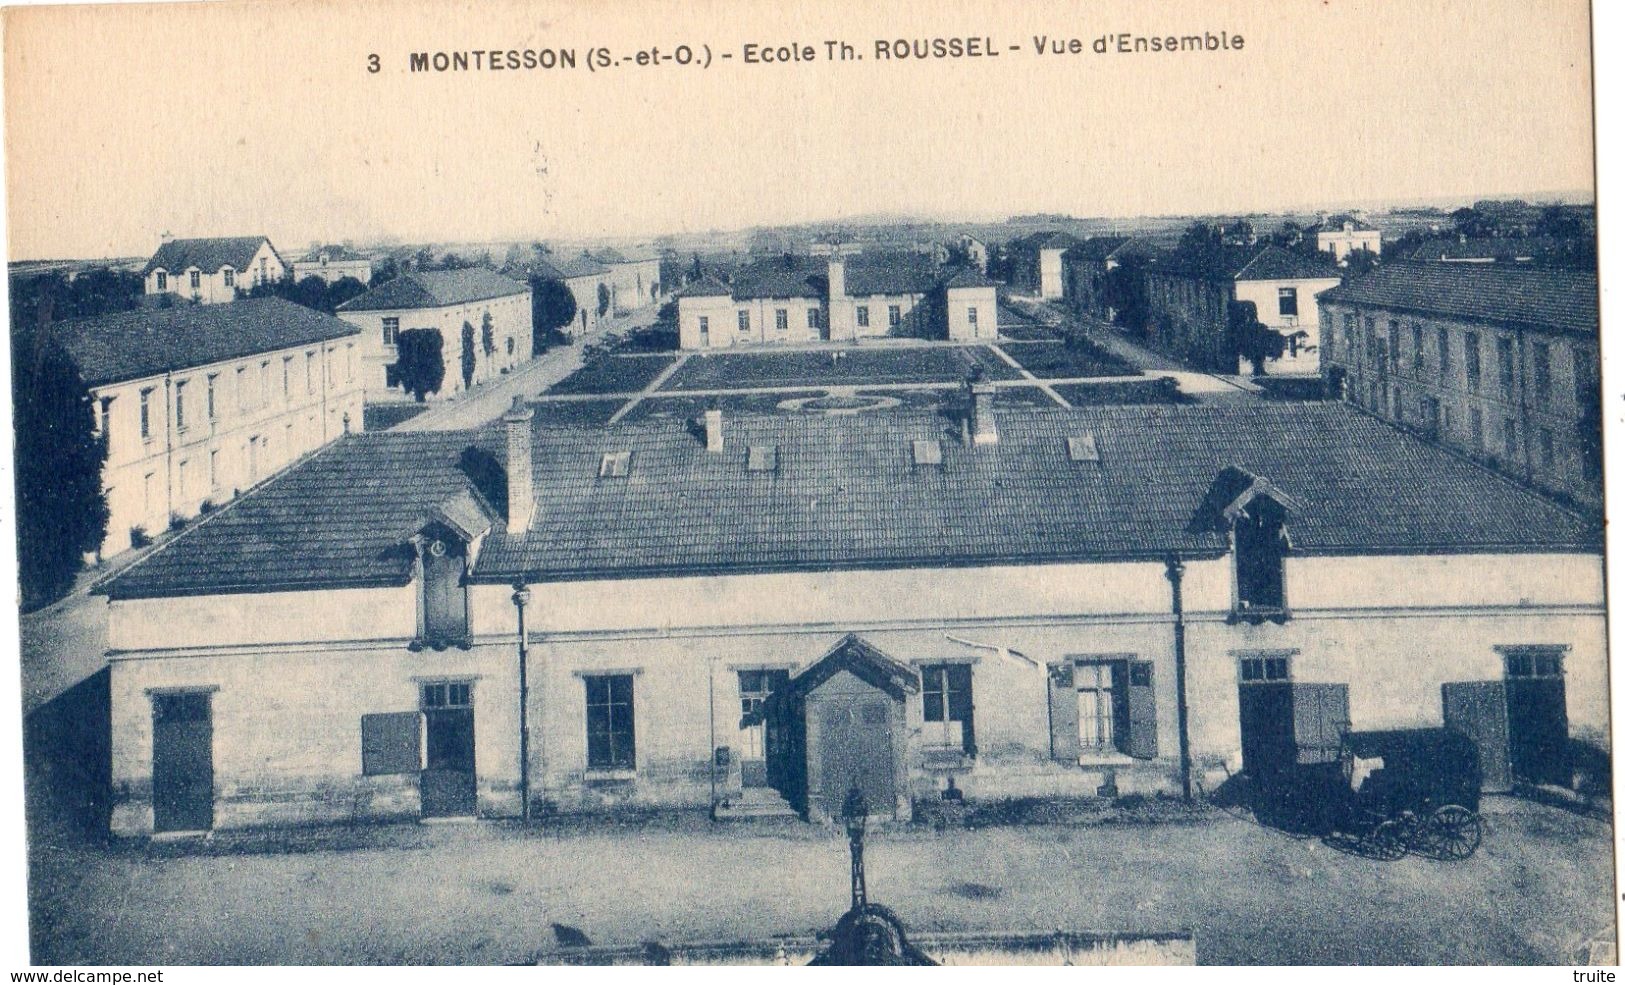 MONTESSON ECOLE TH. ROUSSEL VUE D'ENSEMBLE - Montesson